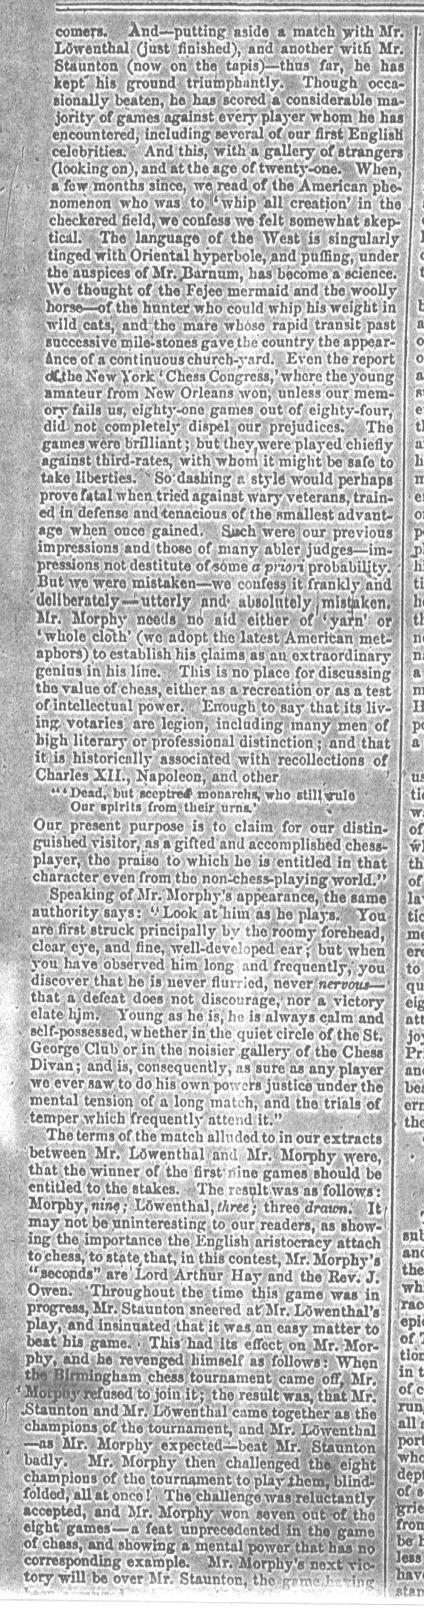 1858.09.25-04 Harper's Weekly.jpg